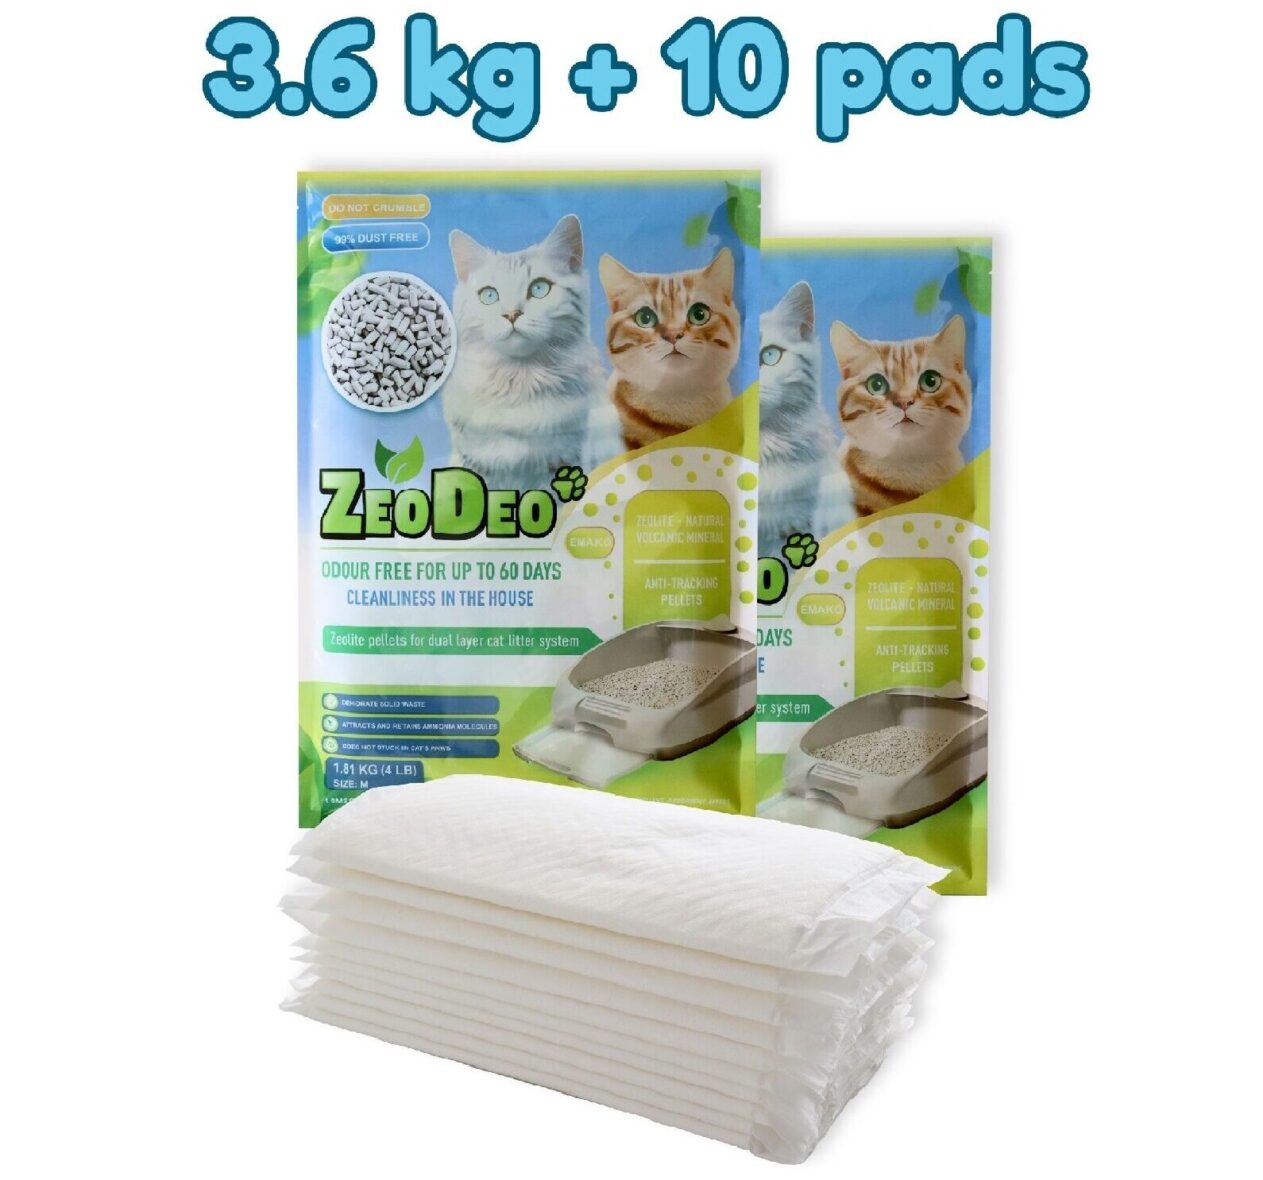 „ZeoDeo“ natūralaus ceolito kačių kraiko granulės 3.6 kg +10 pads